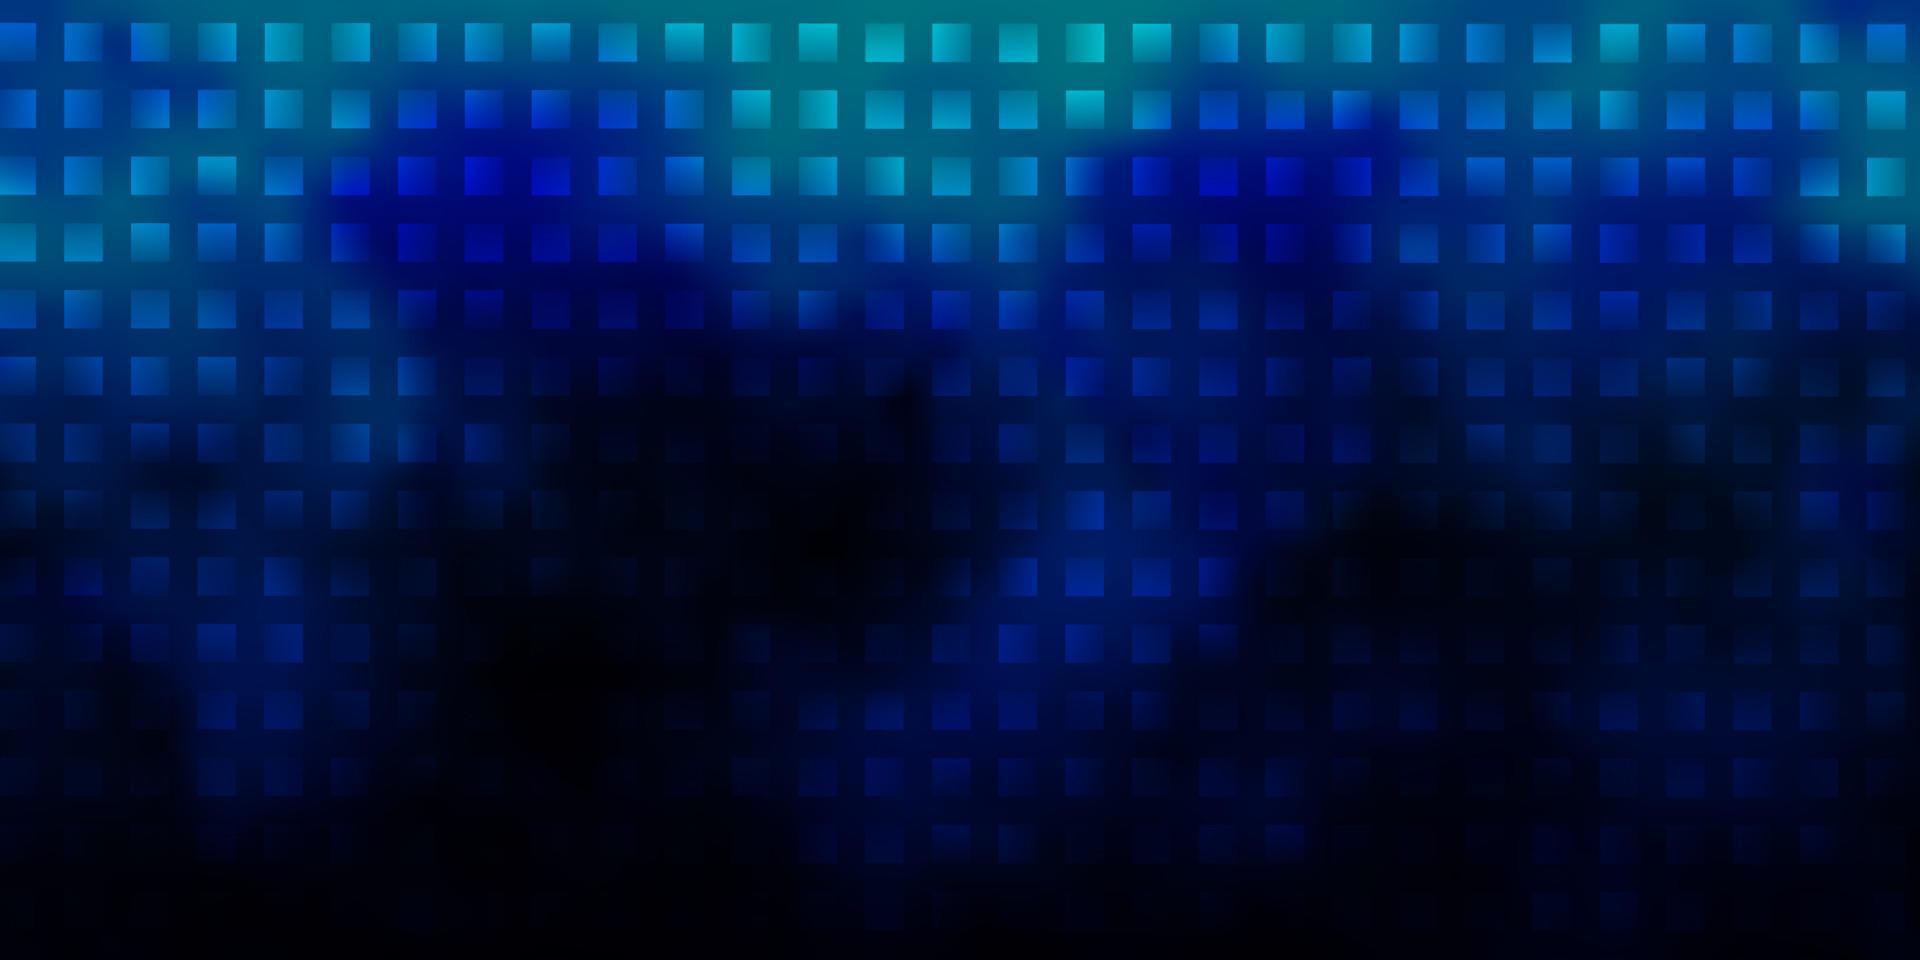 Fondo de vector azul oscuro en estilo poligonal.